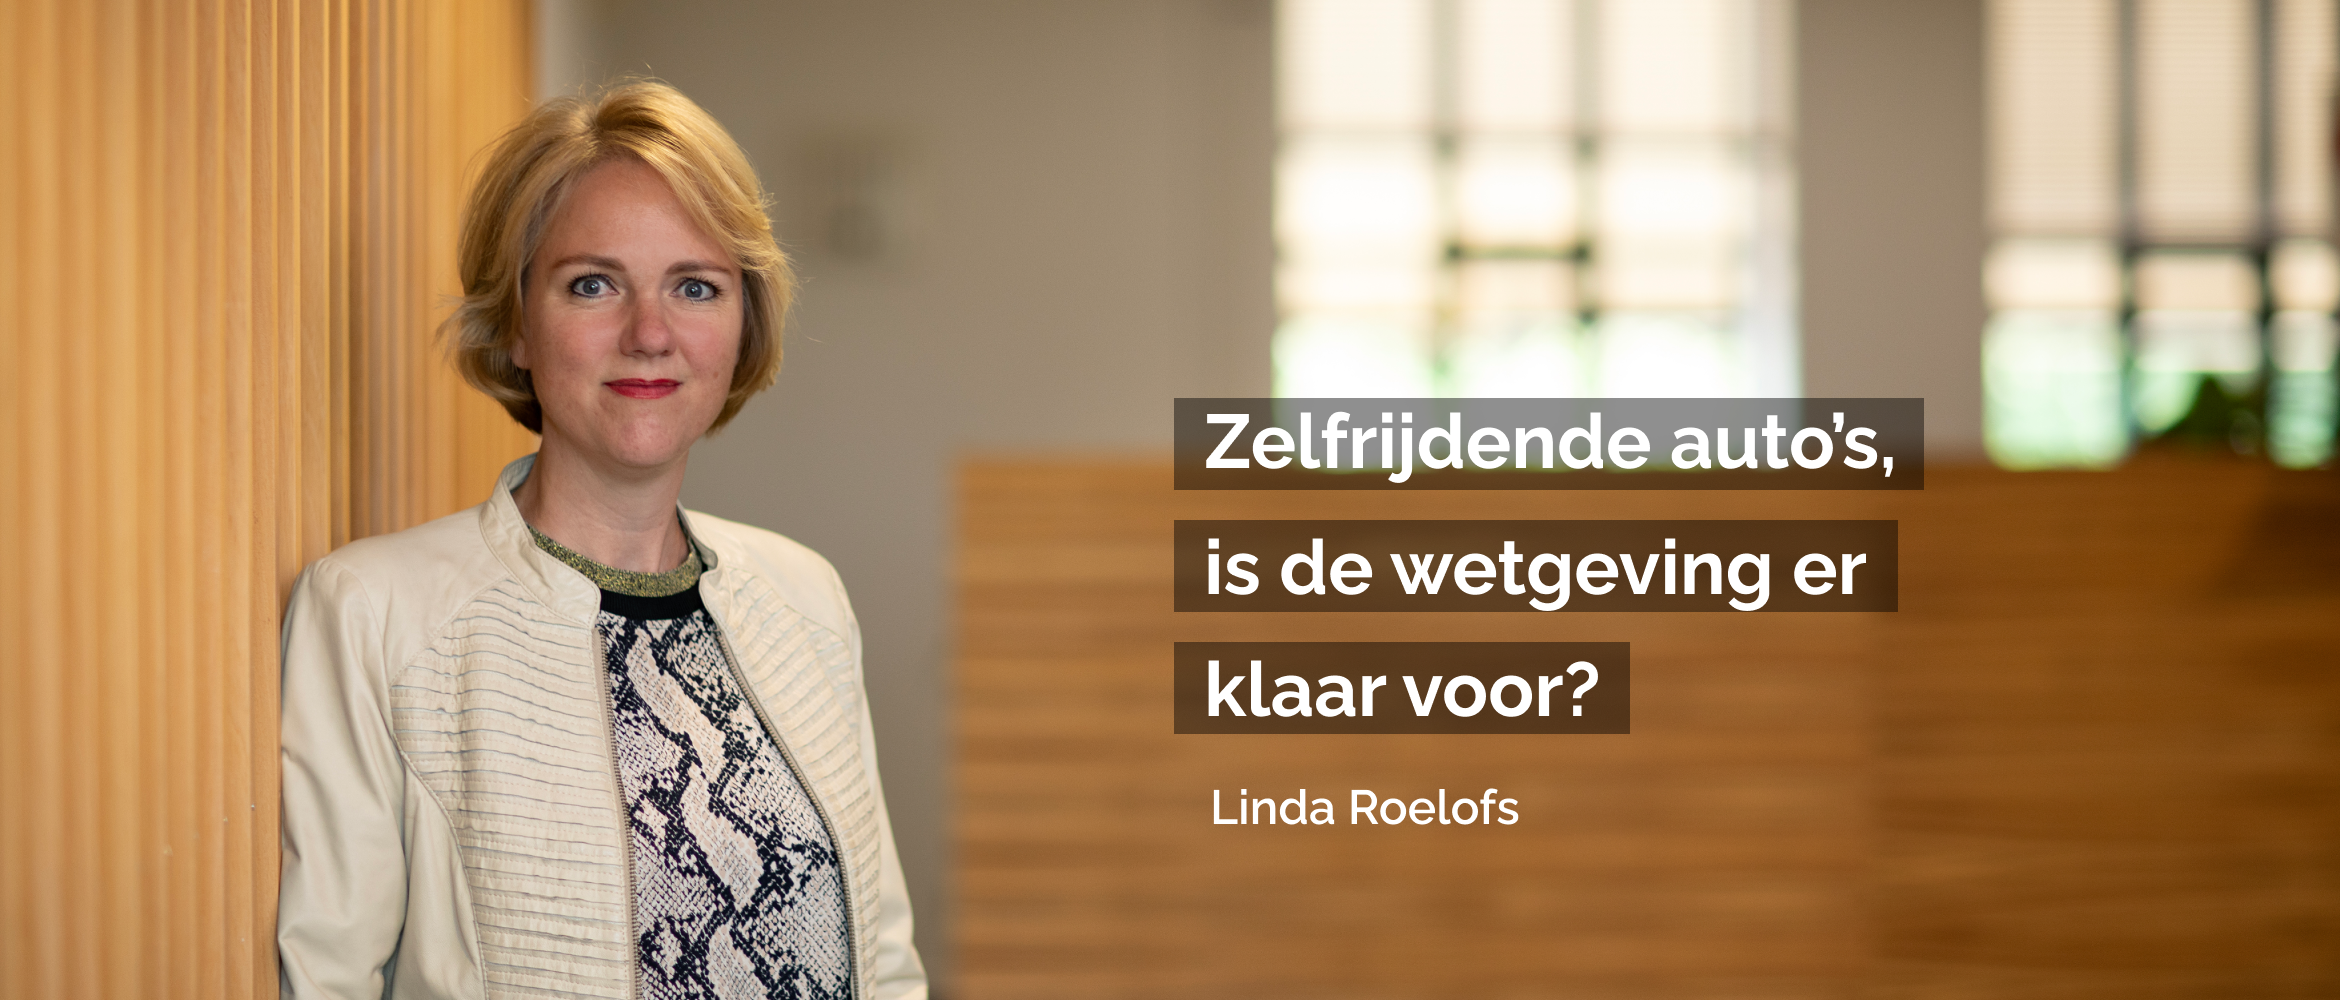 Blog Linda Roelofs | Zelfrijdende auto's, is de wetgeving er klaar voor?